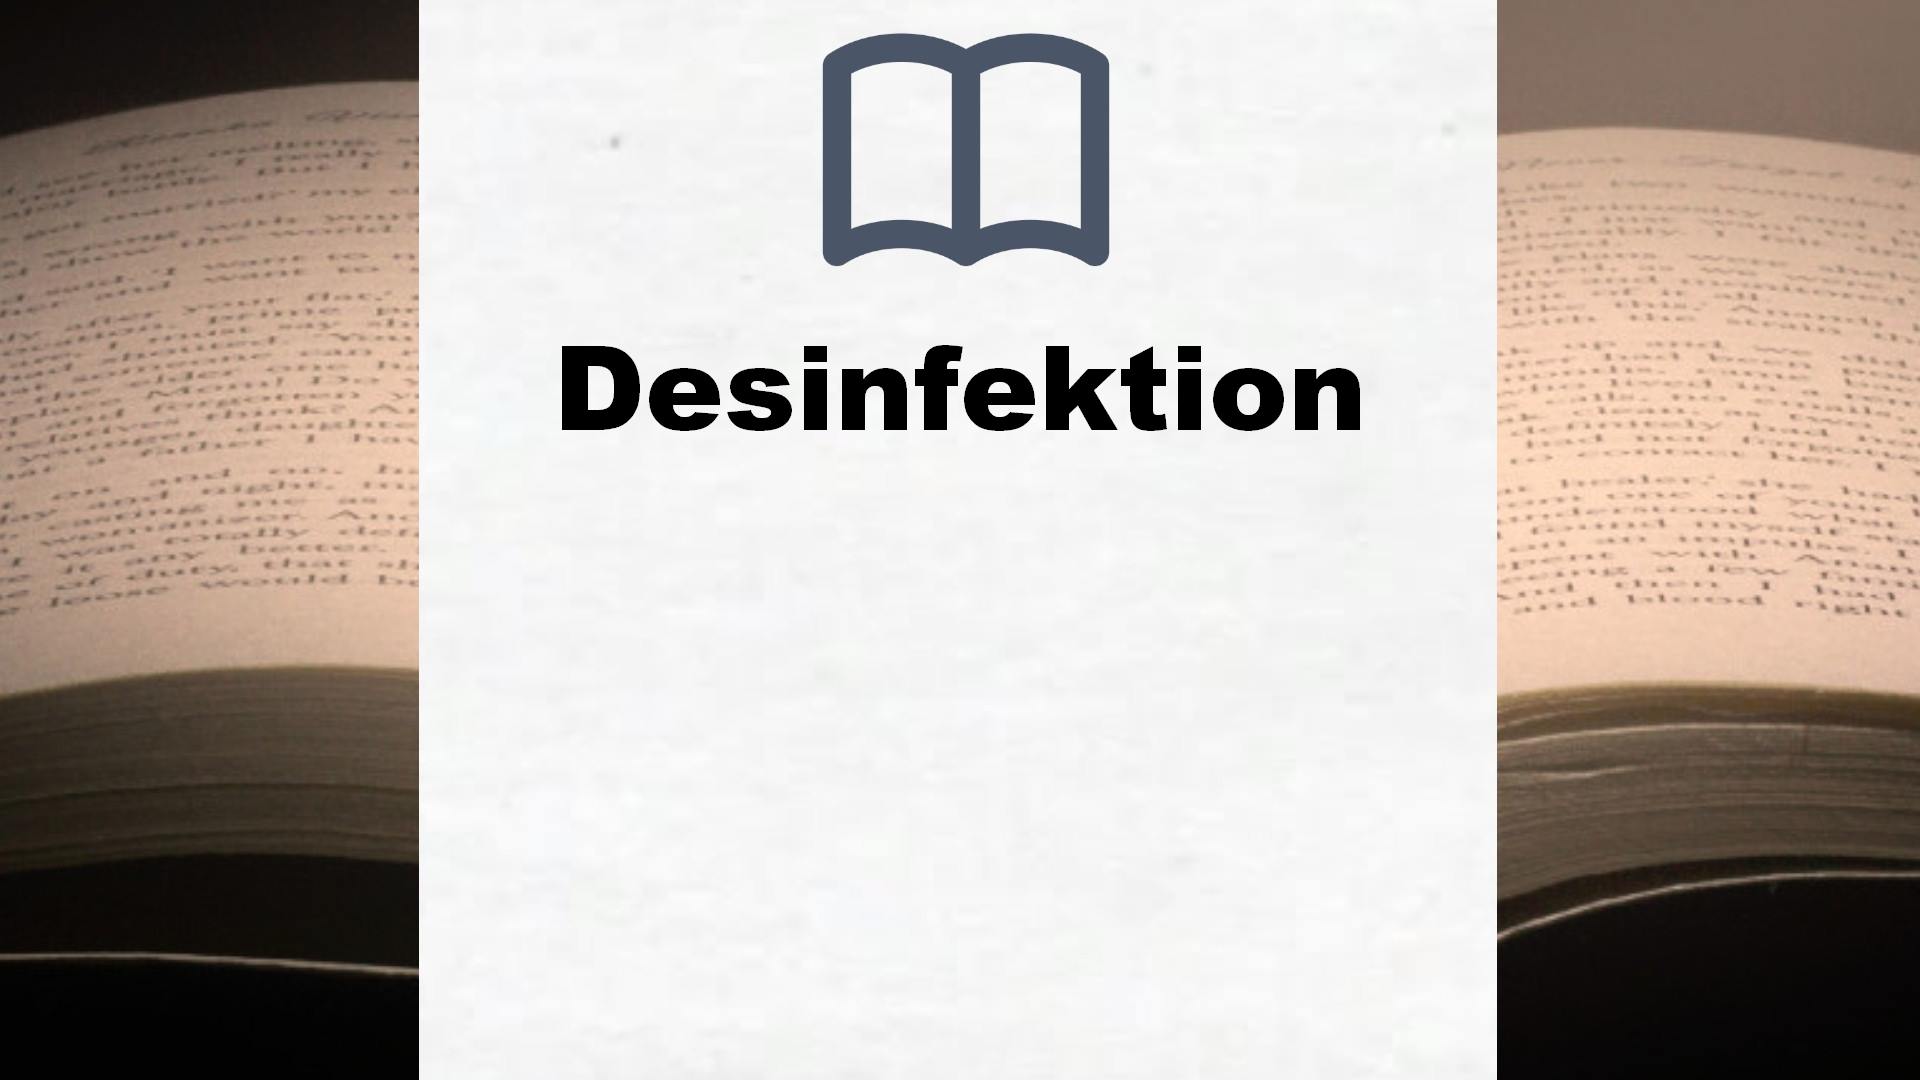 Bücher über Desinfektion